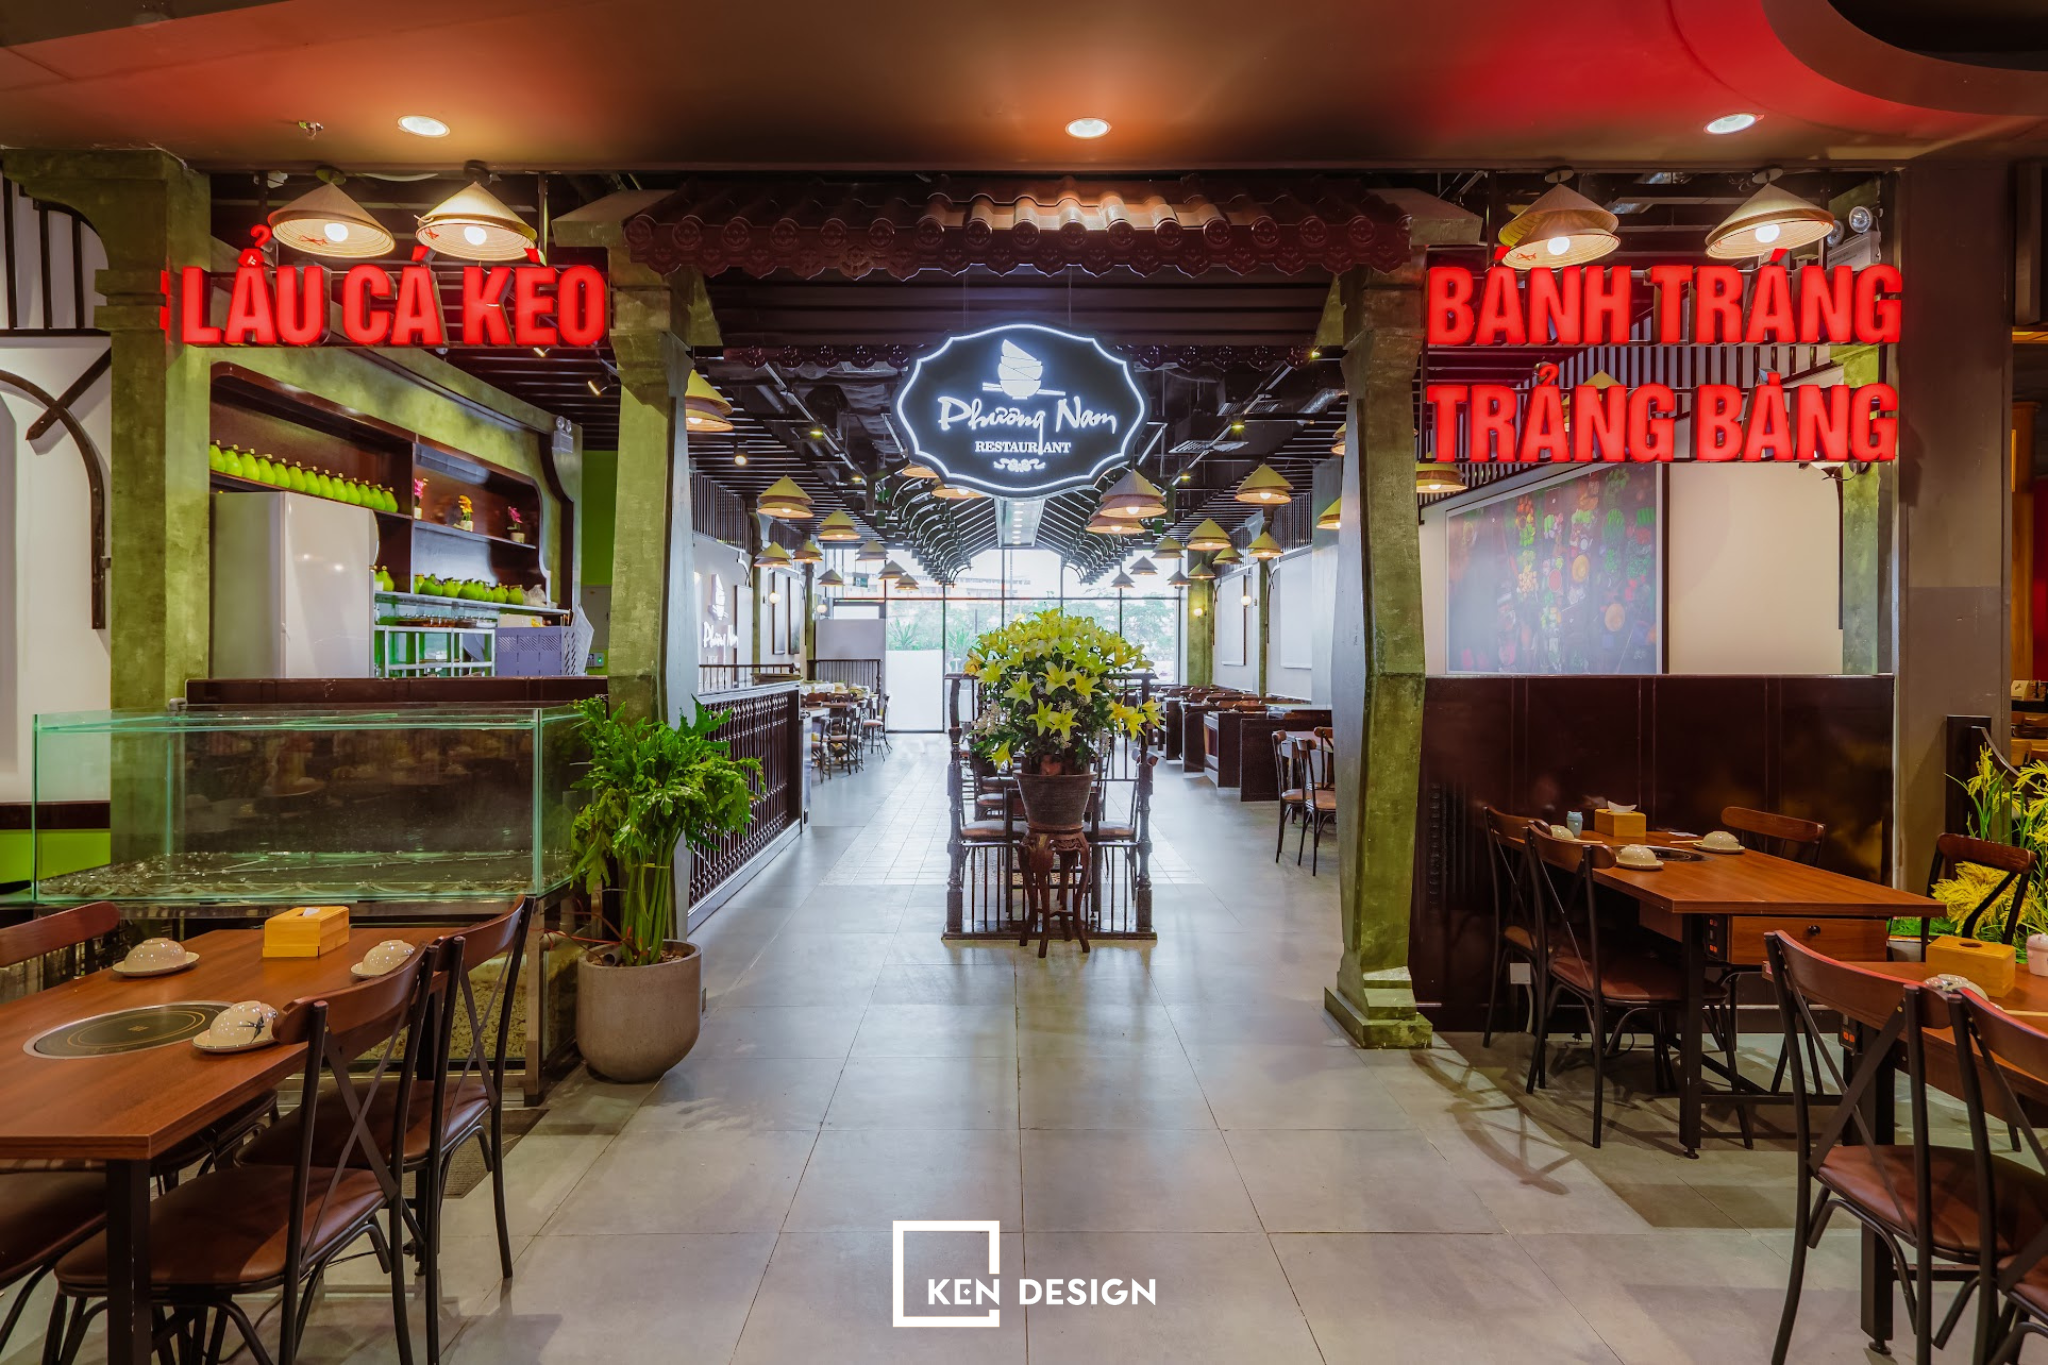 thiet ke nha hang phuong nam 12 - Thi công nhà hàng Phương Nam độc đáo và tinh tế